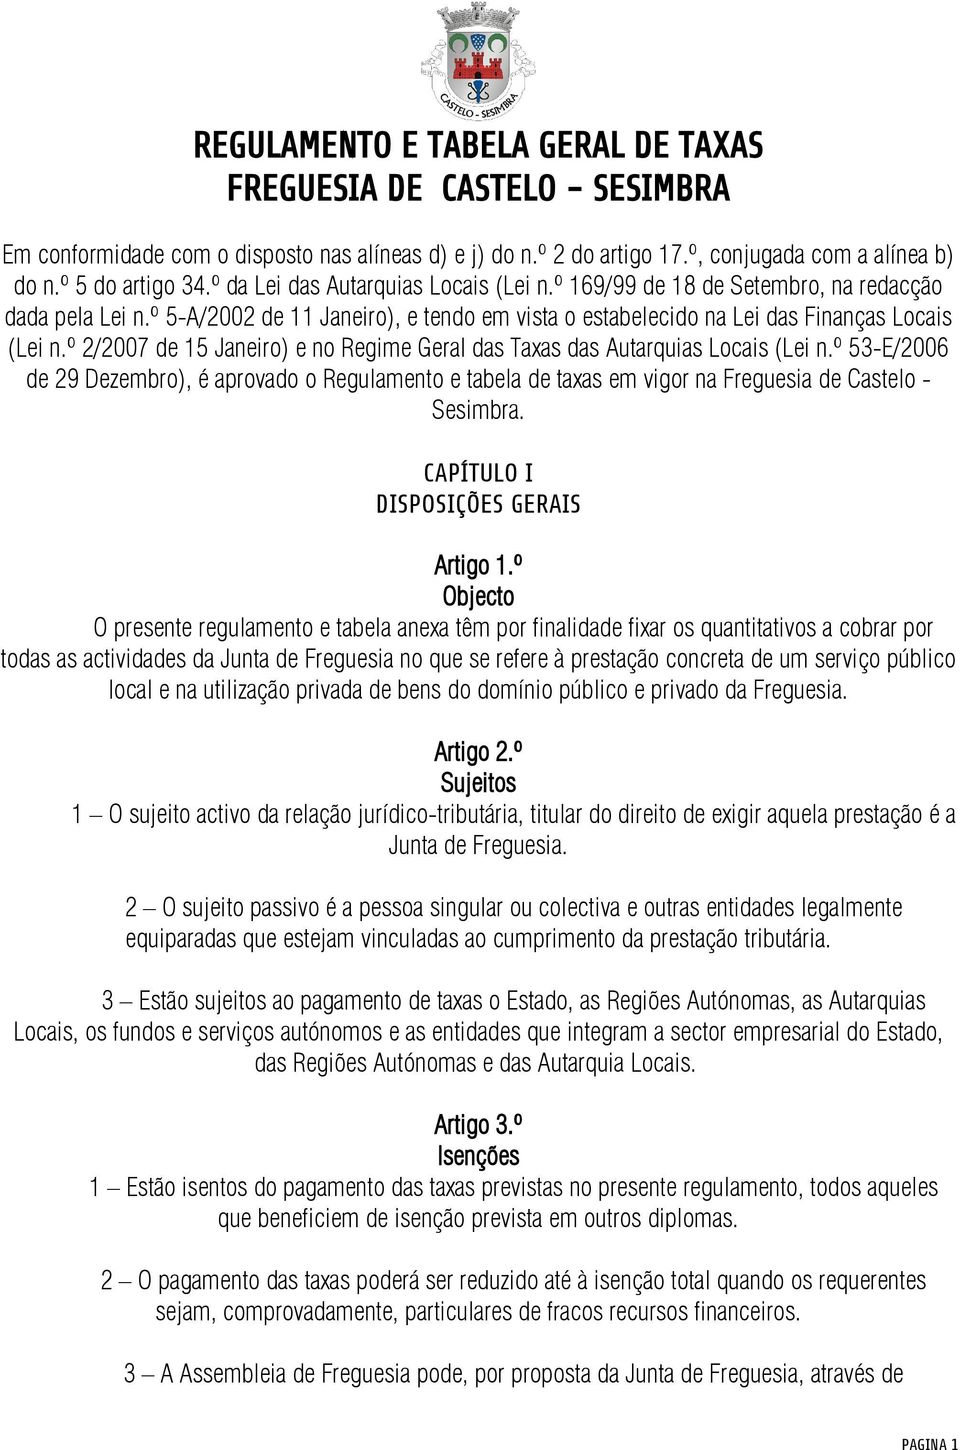 º 2/2007 de 15 Janeiro) e no Regime Geral das Taxas das Autarquias Locais (Lei n.º 53-E/2006 de 29 Dezembro), é aprovado o Regulamento e tabela de taxas em vigor na Freguesia de Castelo - Sesimbra.